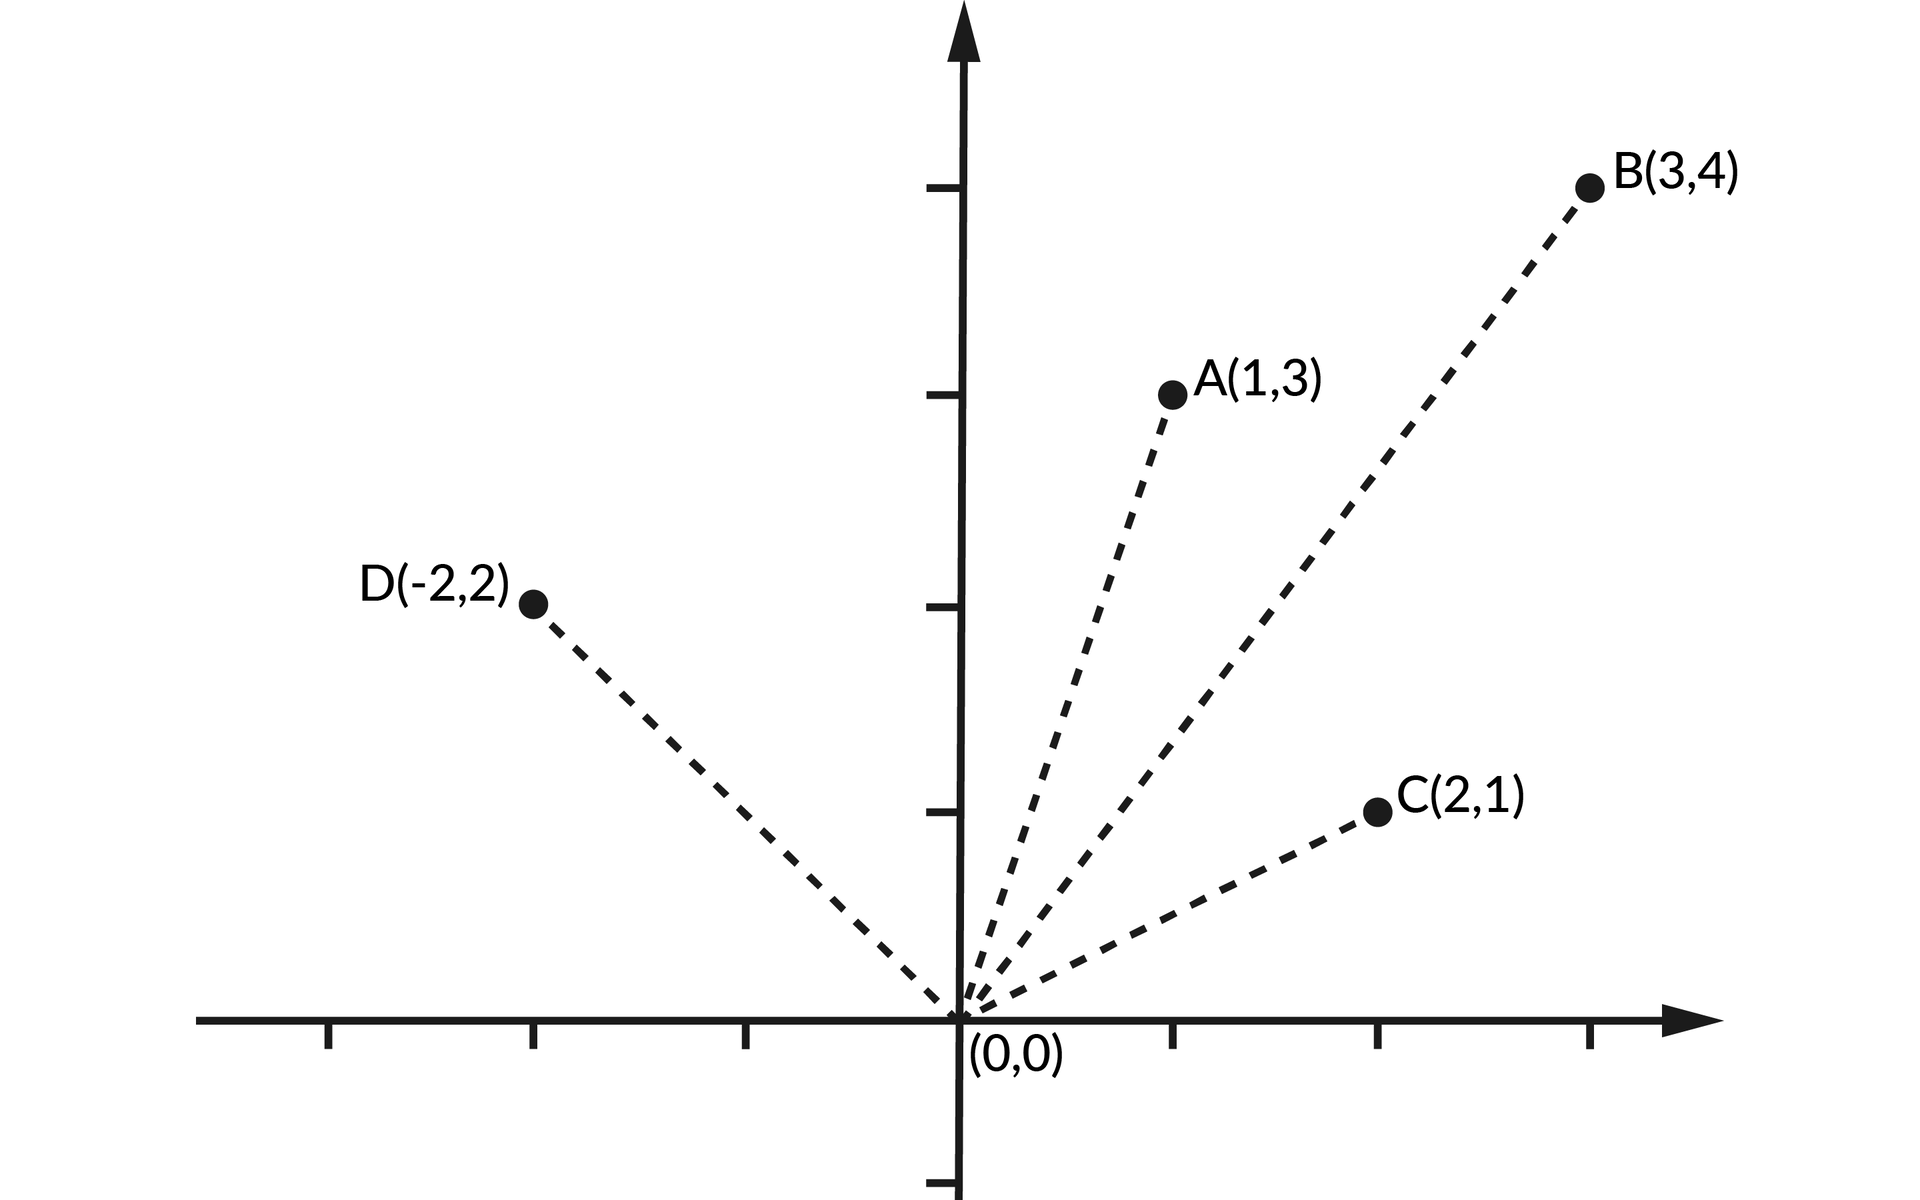 Ilustracja przedstawia układ współrzędnych z poziomą osią X oraz z pionową osią Y.  Na płaszczyźnie umieszczono punkty: A, B, C, D.  Od punktu przecięcia osi X z osią Y (0, 0) wychodzą przerywane linie dążące do punktów D(-2, 2), A(1, 3), B(3, 4), C(2, 1).